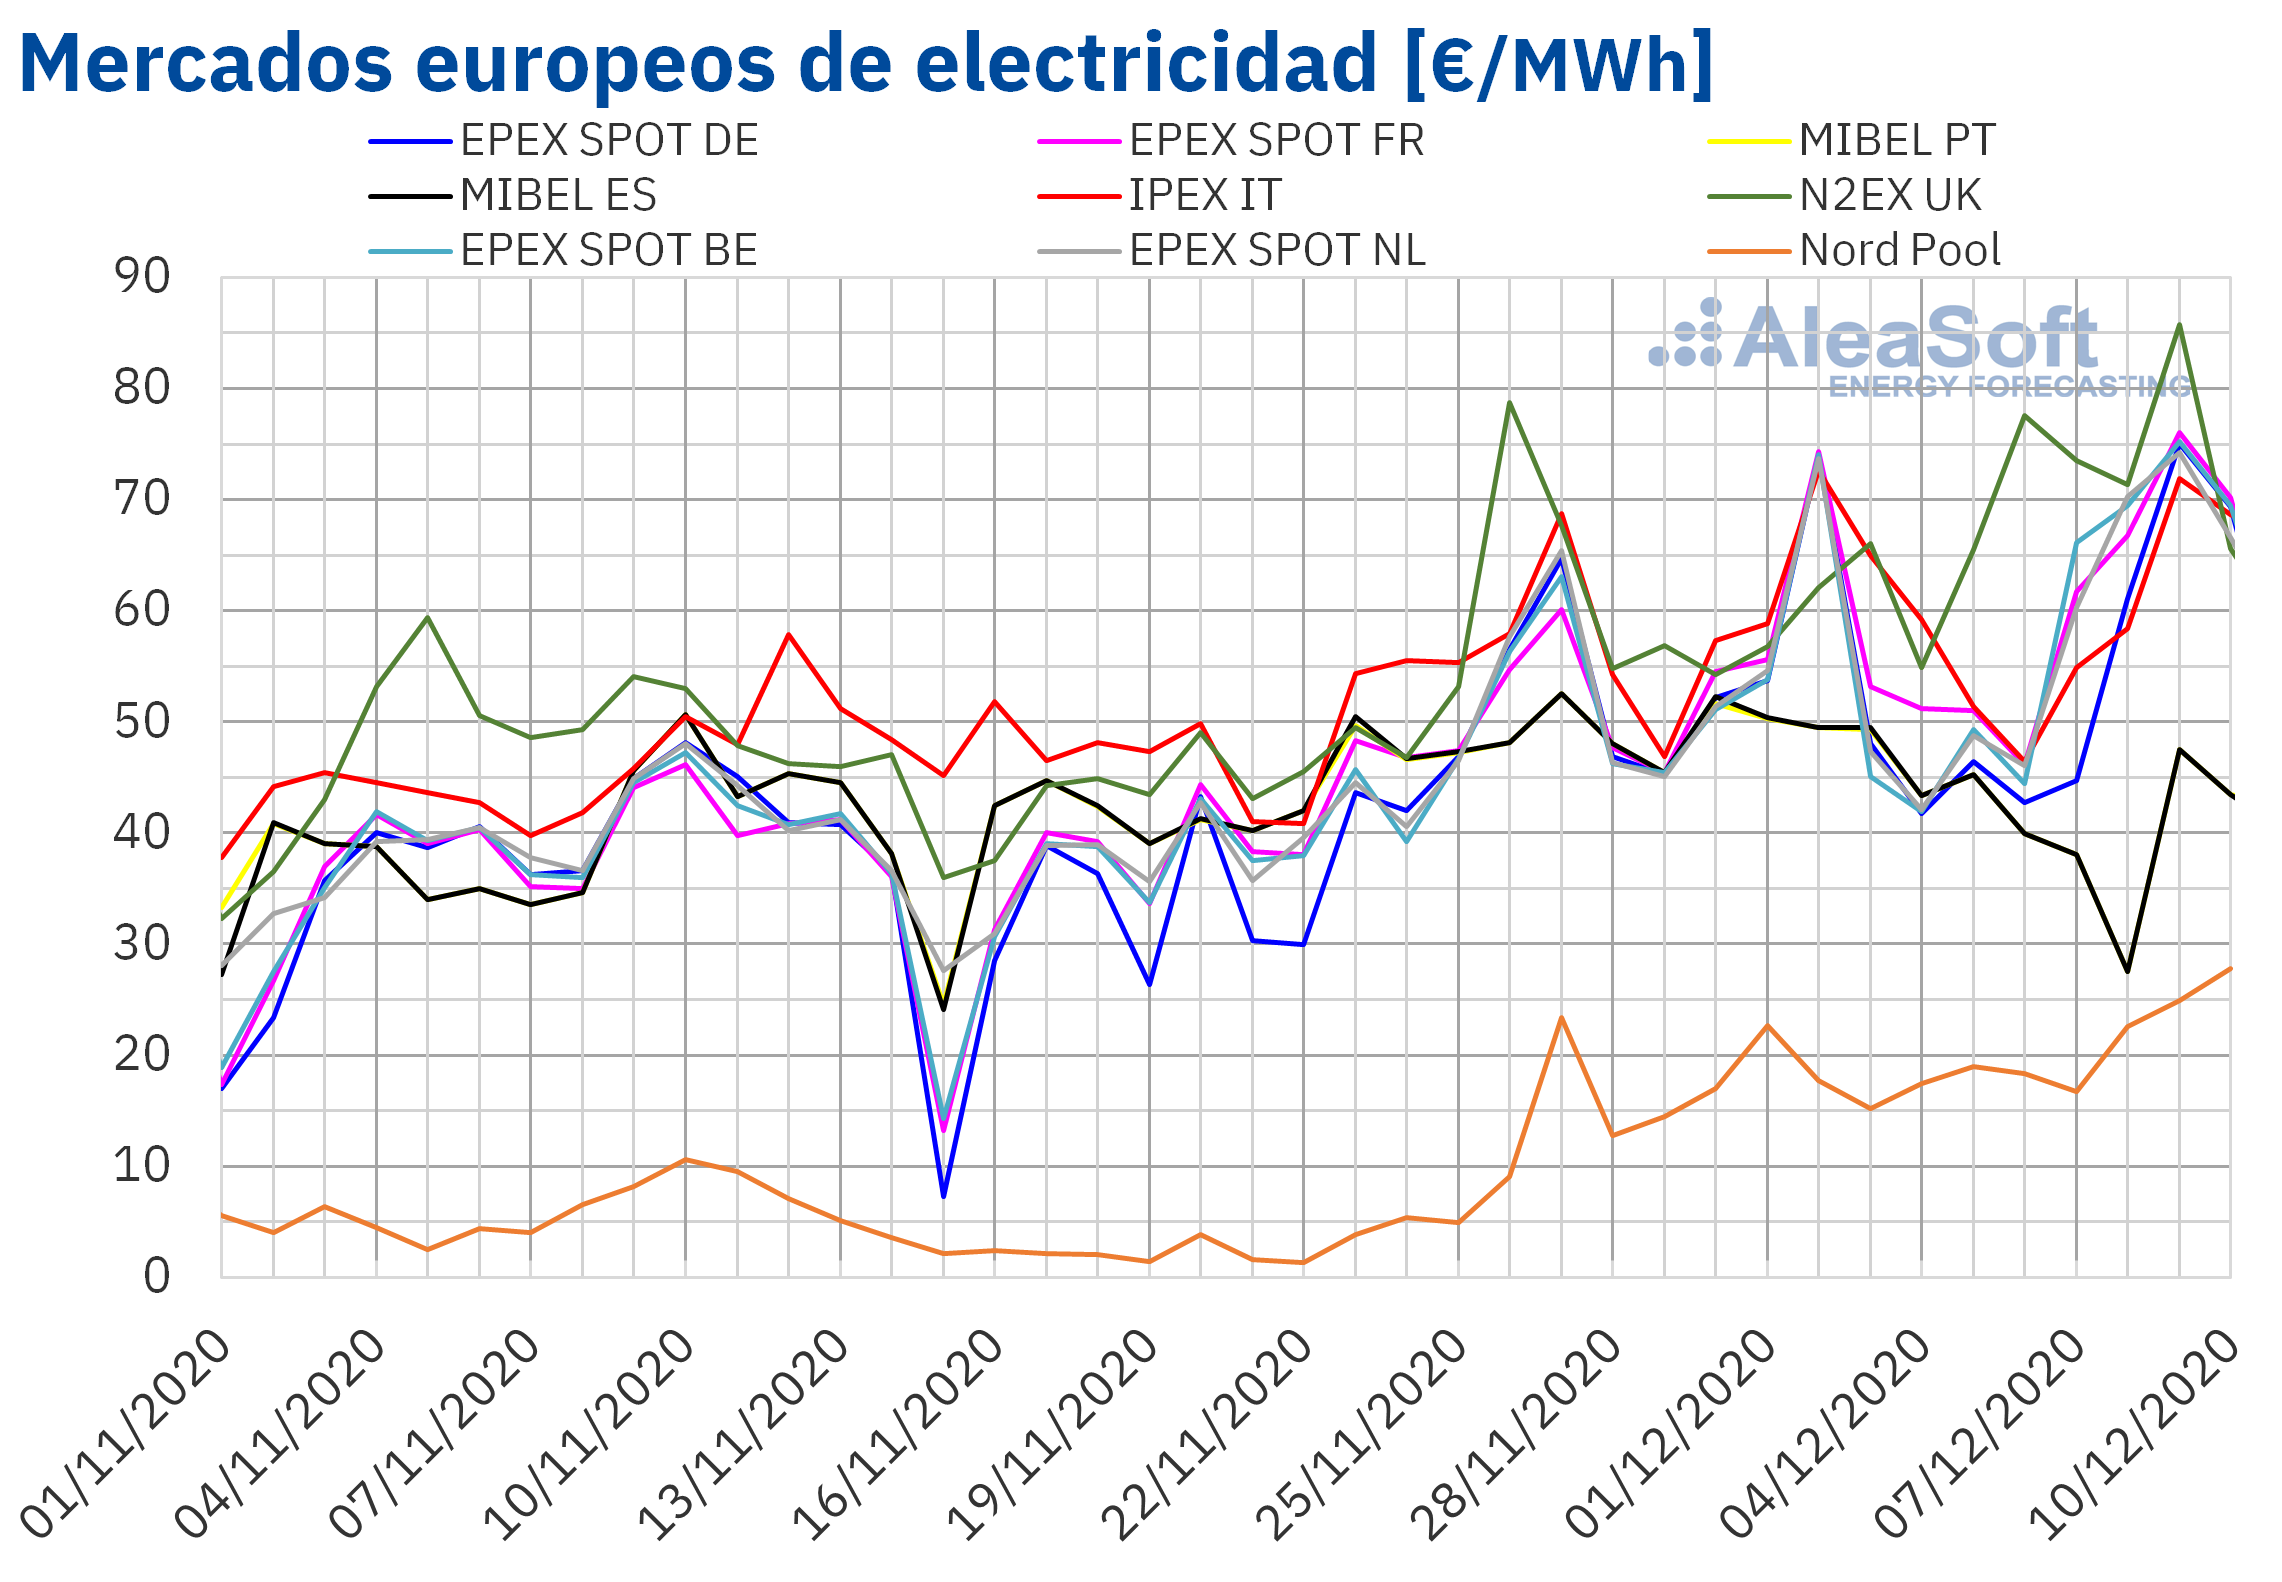 AleaSoft - Precios de mercados europeos de electricidad